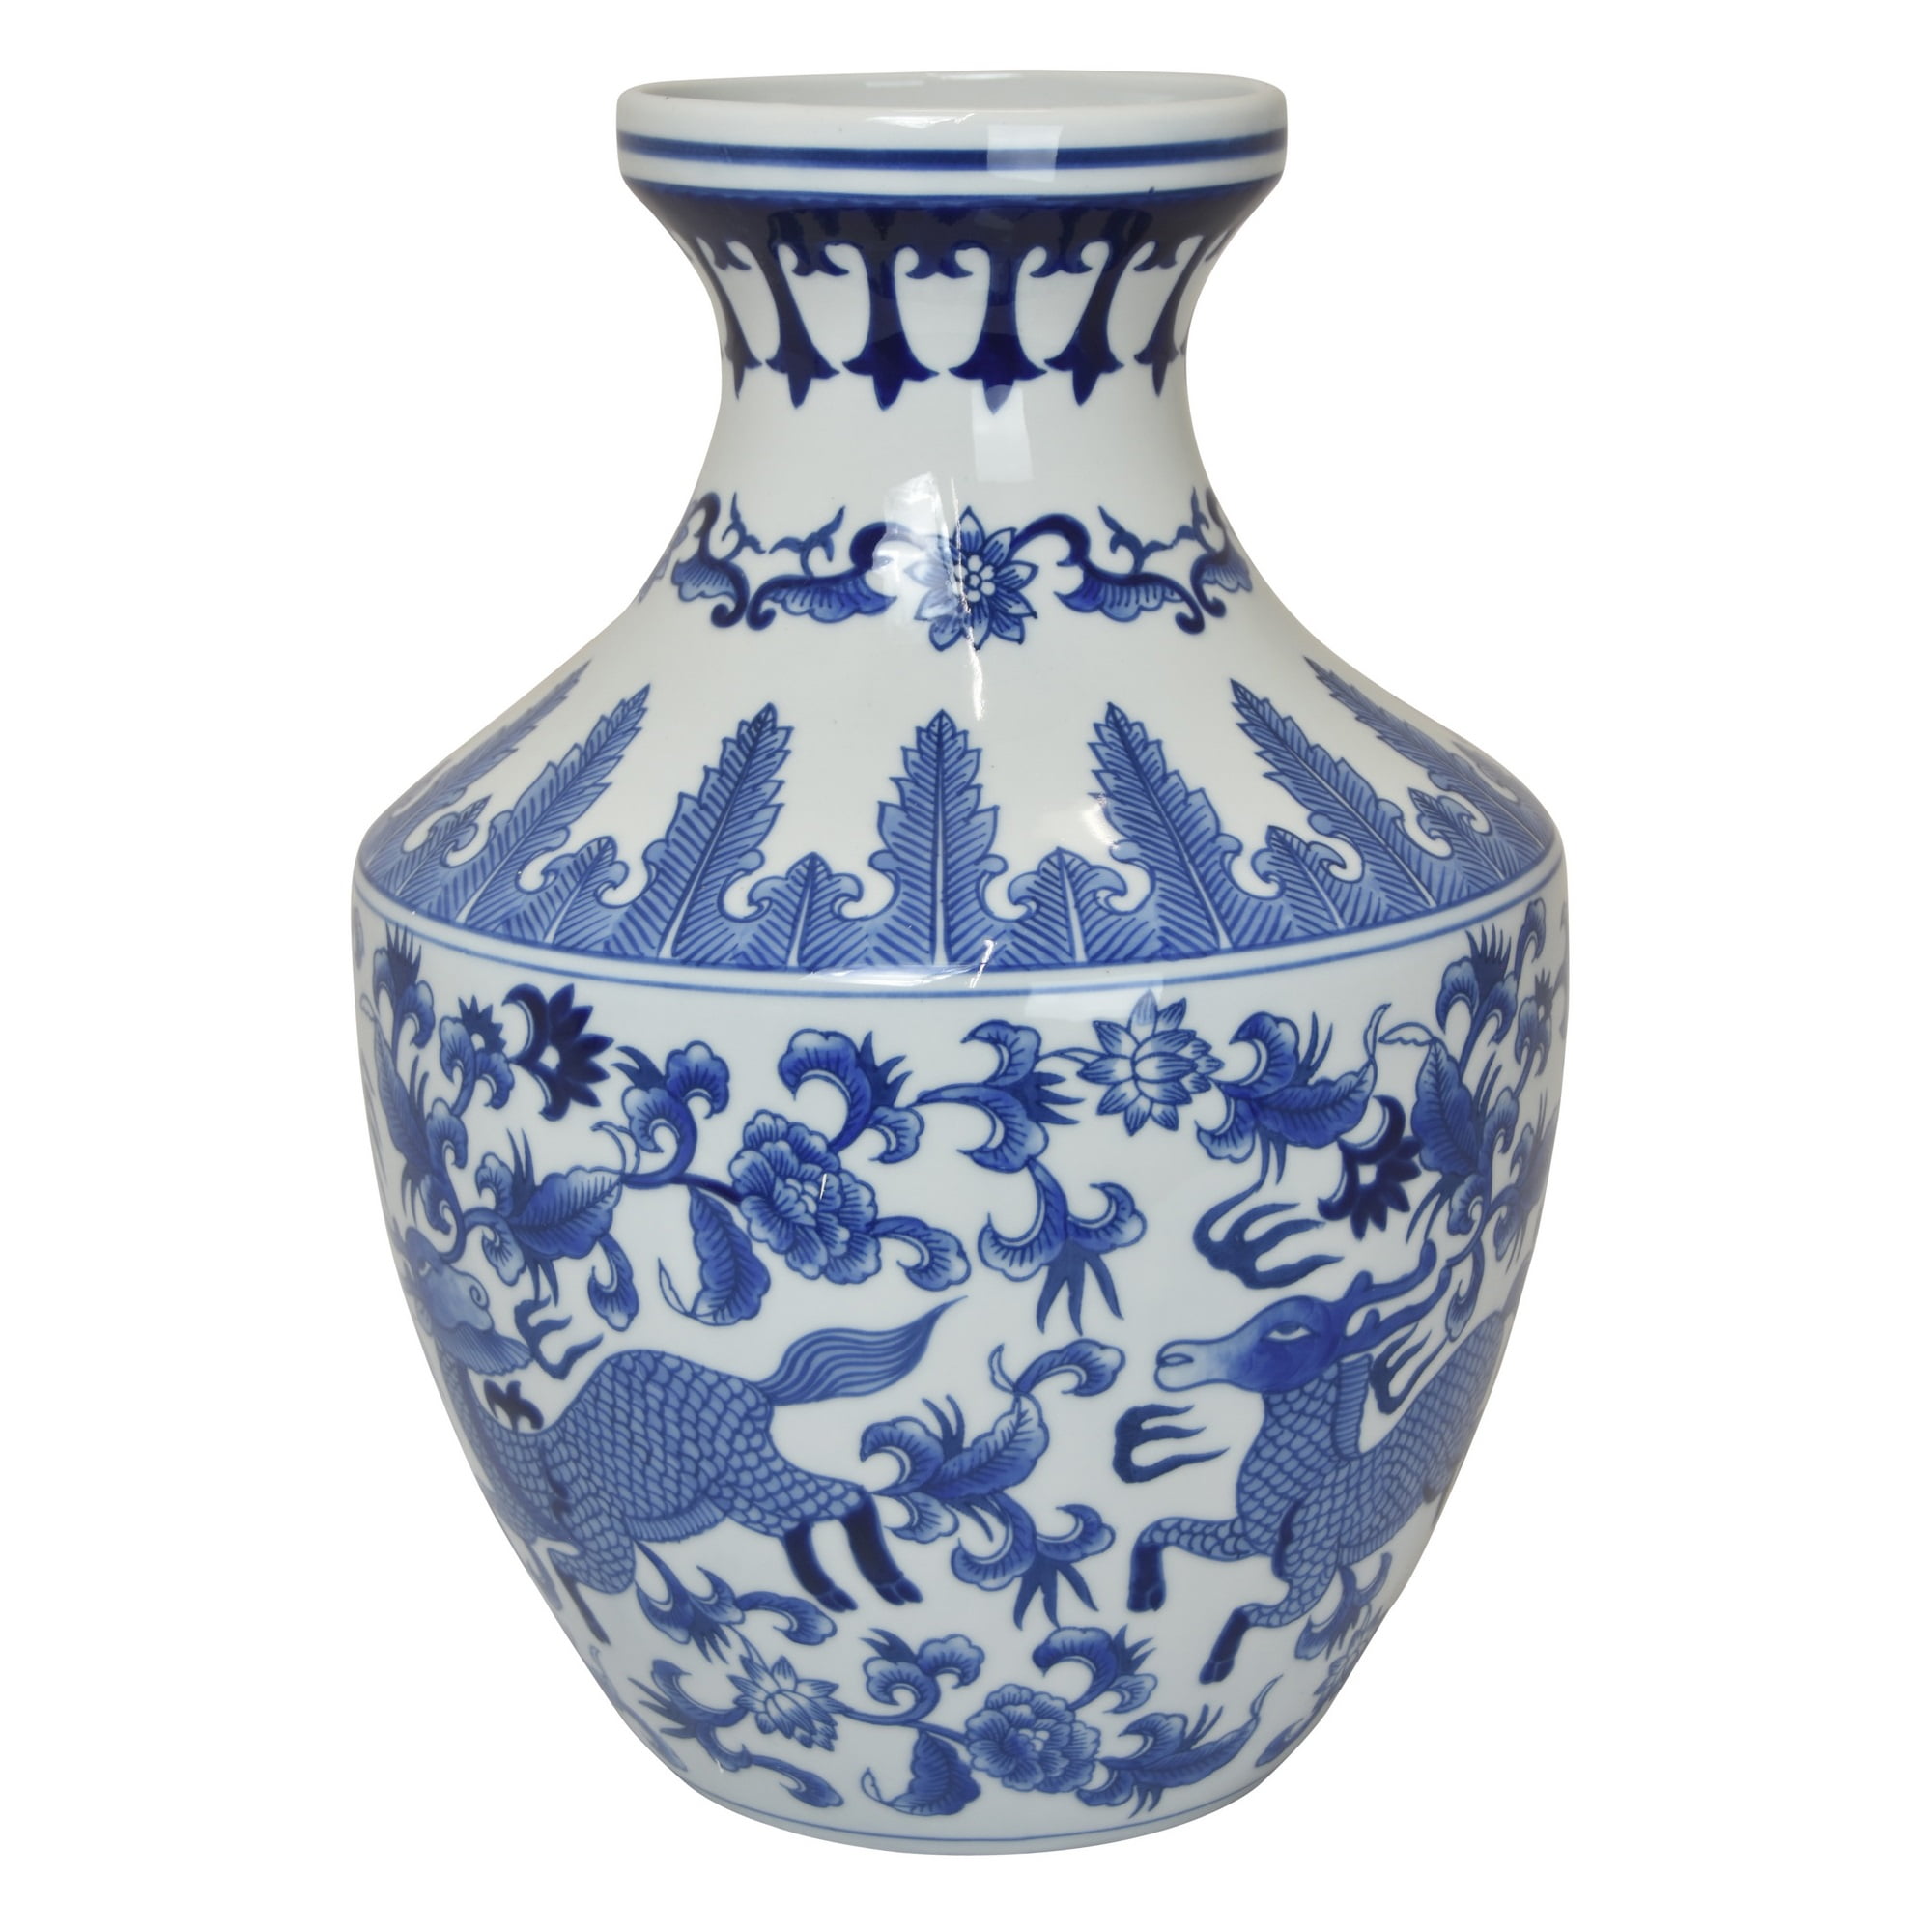 Plutus Brands B&w Vase in Blue Porcelain 